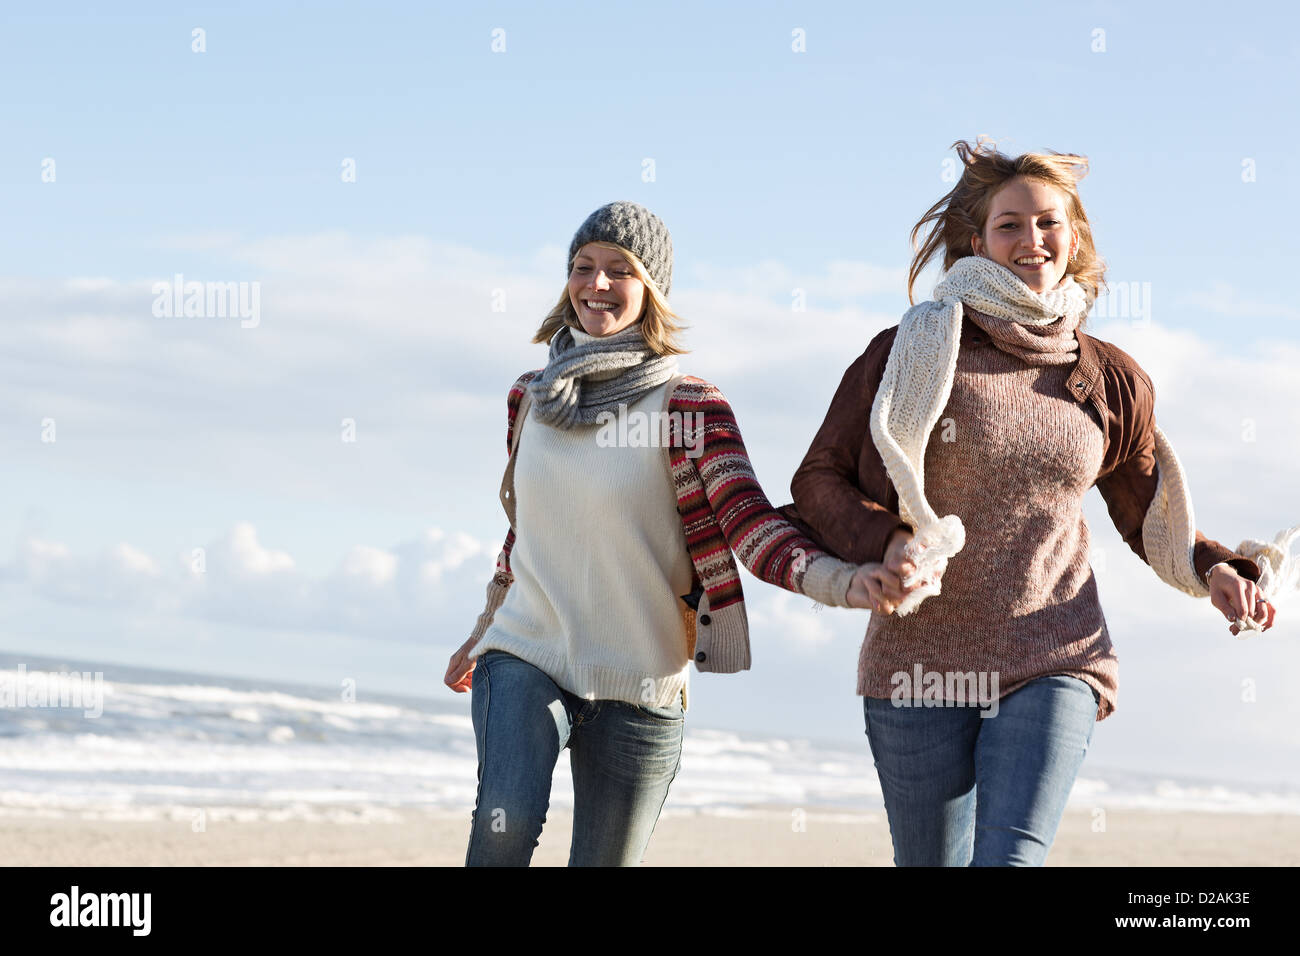 Smiling women running on beach Stock Photo